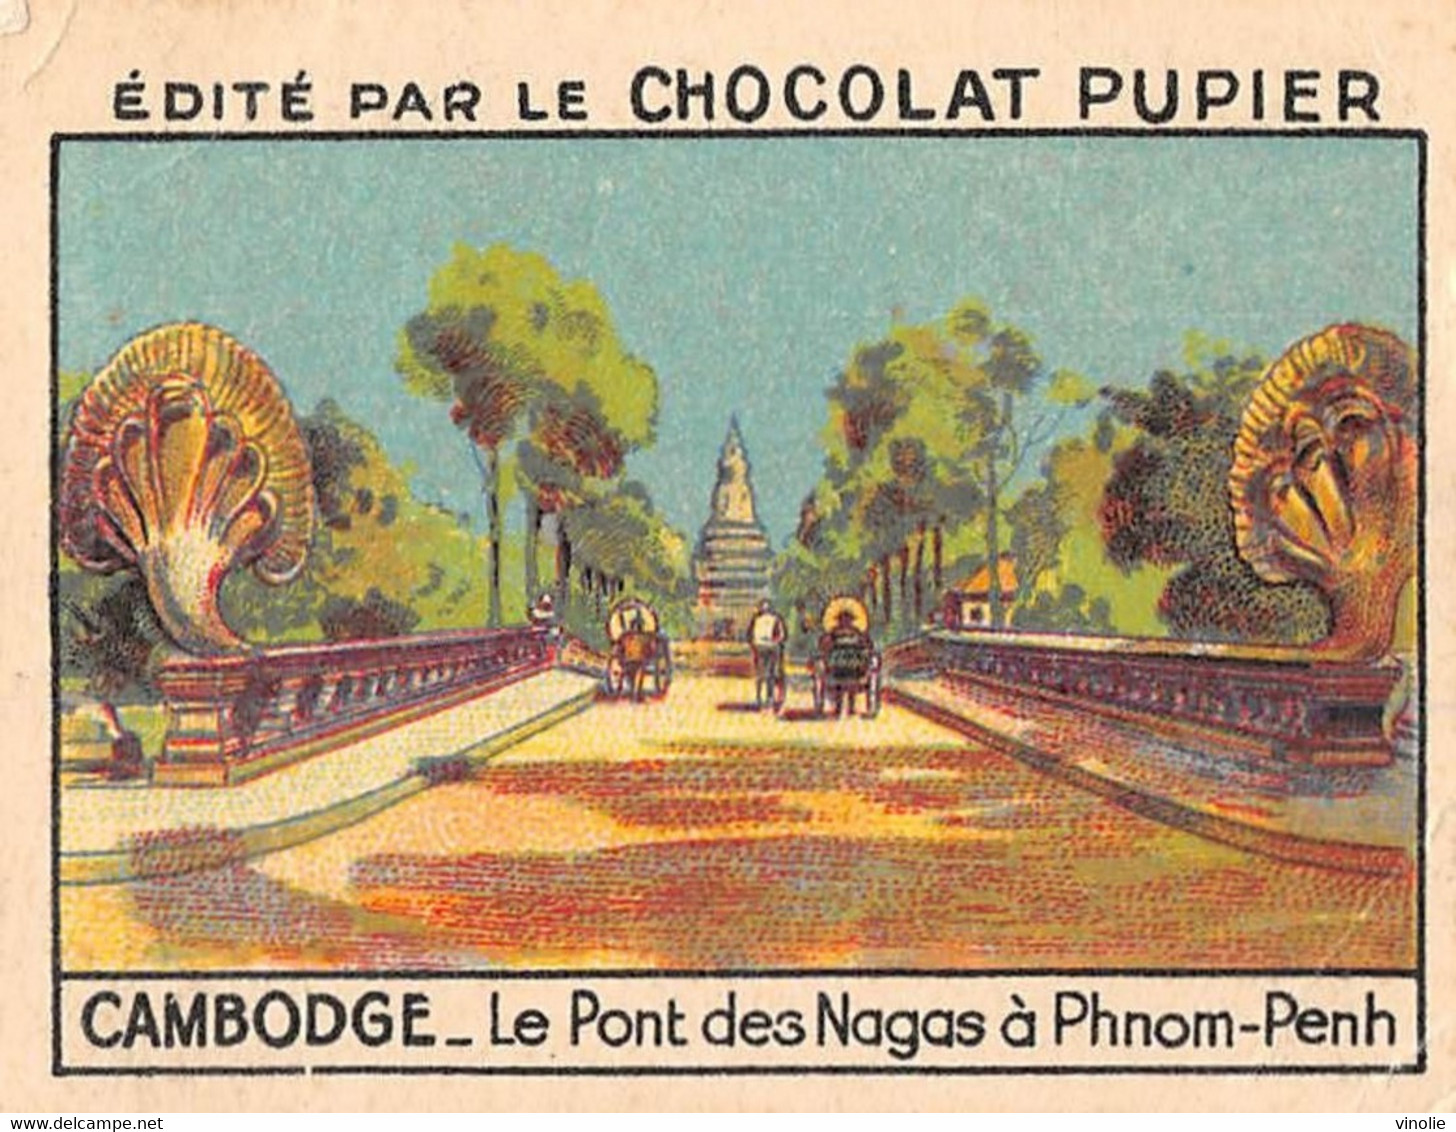 P-21-PLT-1676 : CAMBODGE. PHNOM-PENH. IMAGE DU CHOCOLAT PUPIER - Cambodge